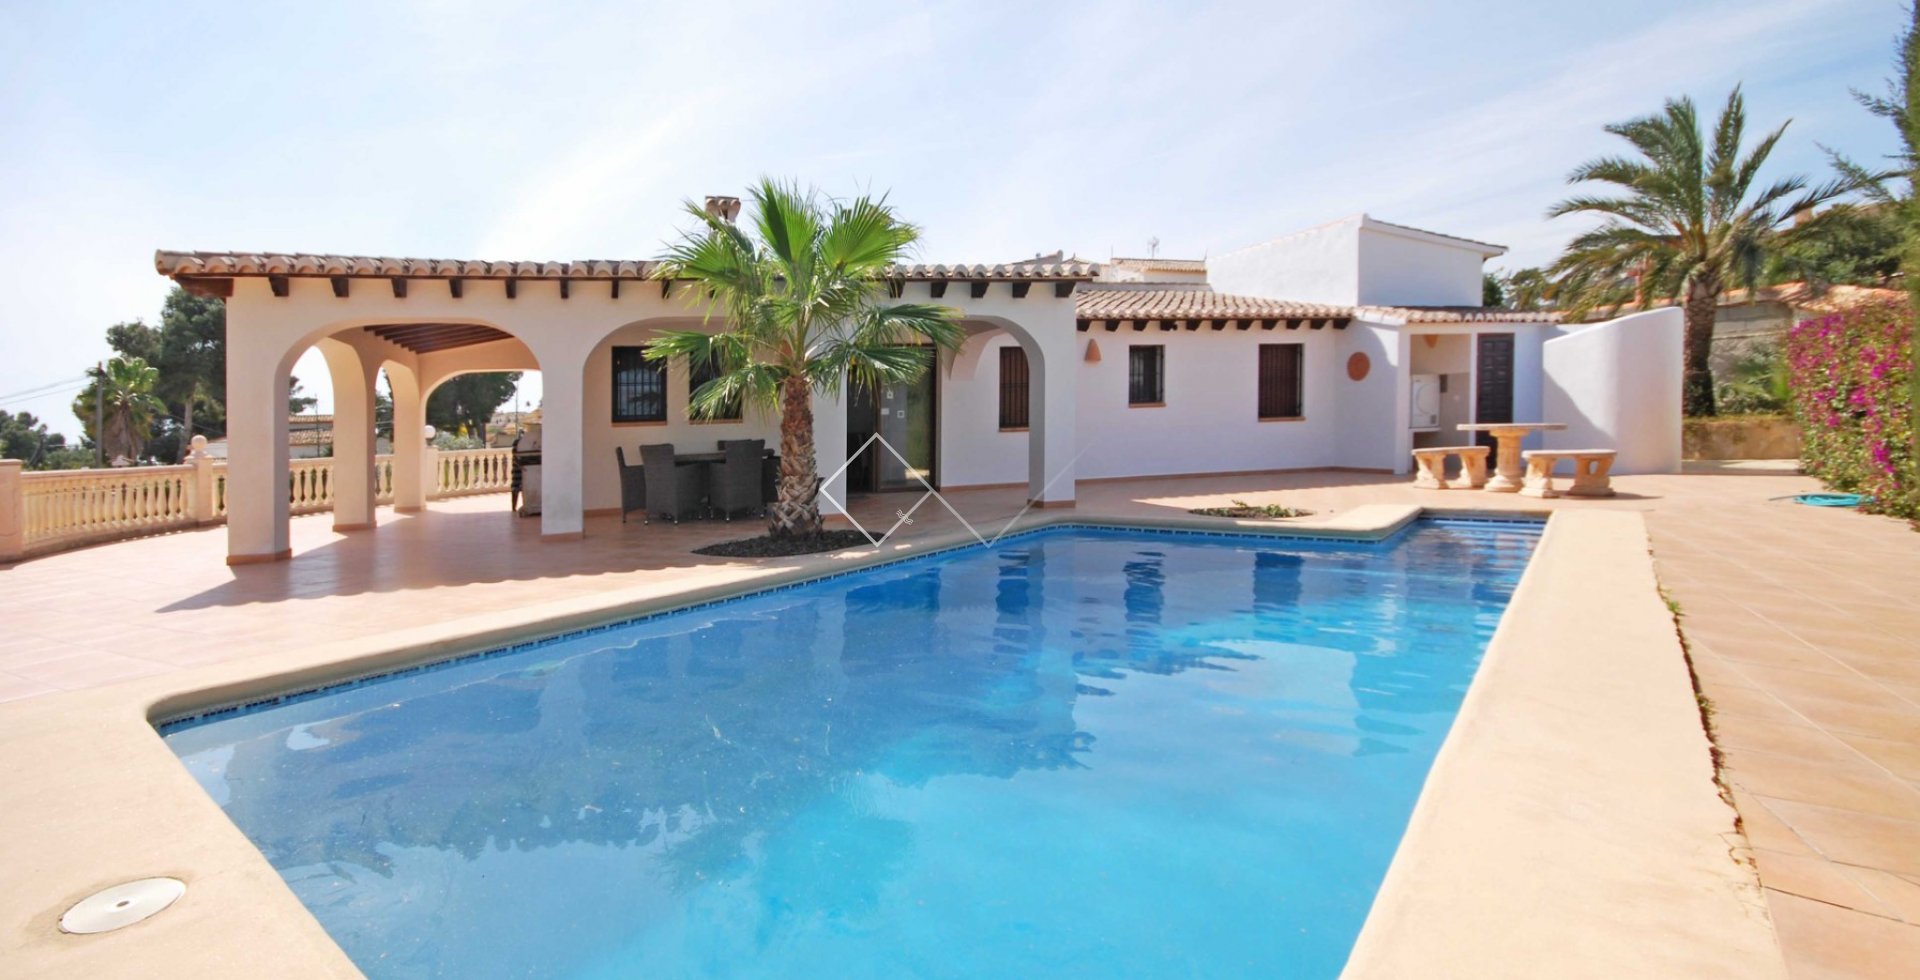 villa piscina palmera - Se vende una villa bonita de un nivel en Moraira